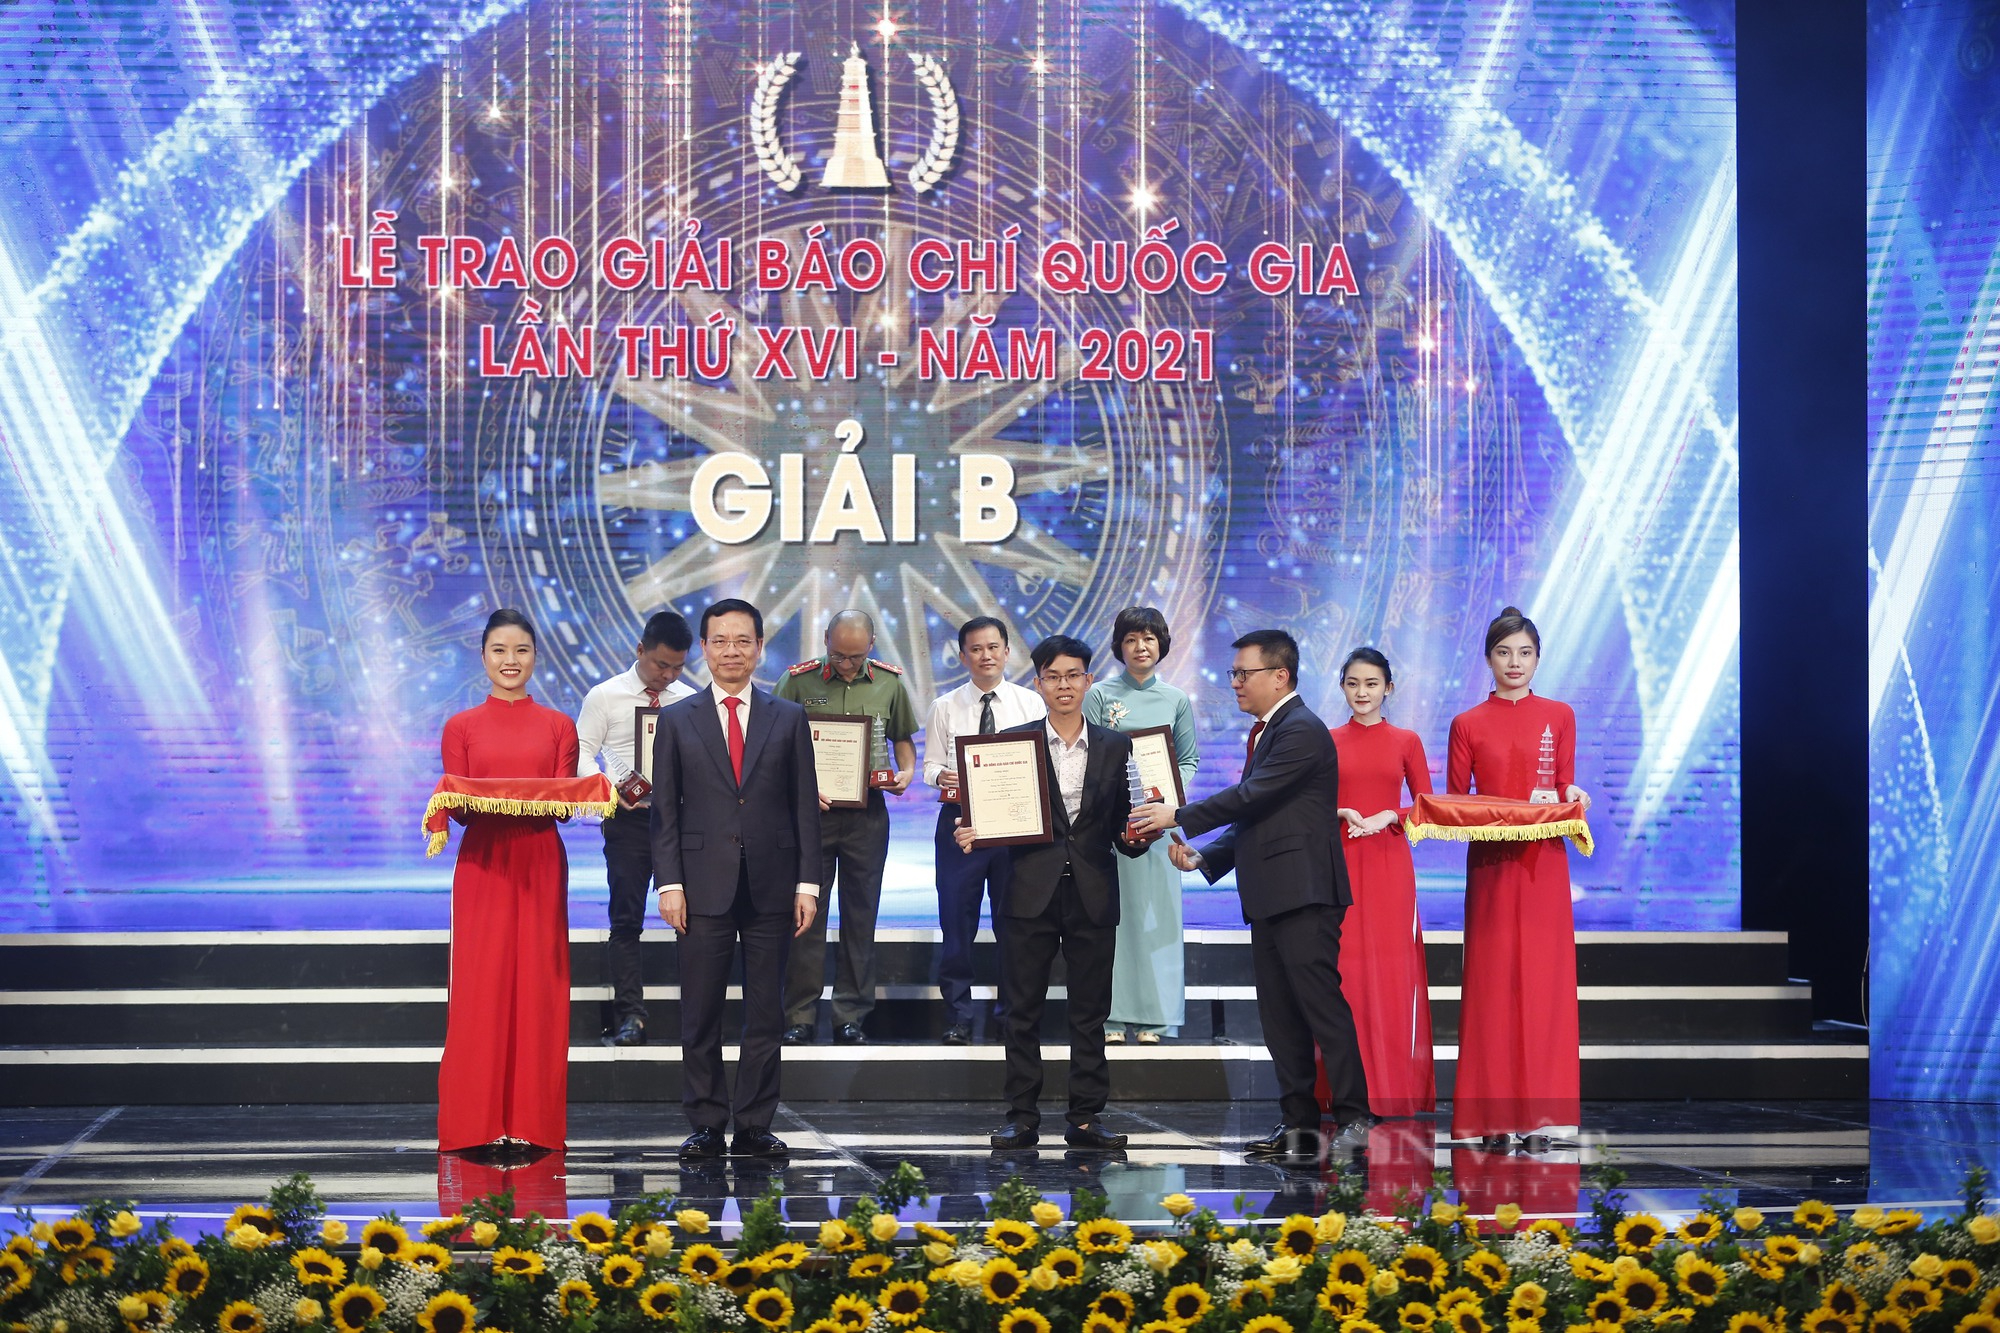 Báo NTNN/Dân Việt đoạt hàng loạt Giải Báo chí Quốc gia lần thứ XVI - năm 2021 - Ảnh 9.